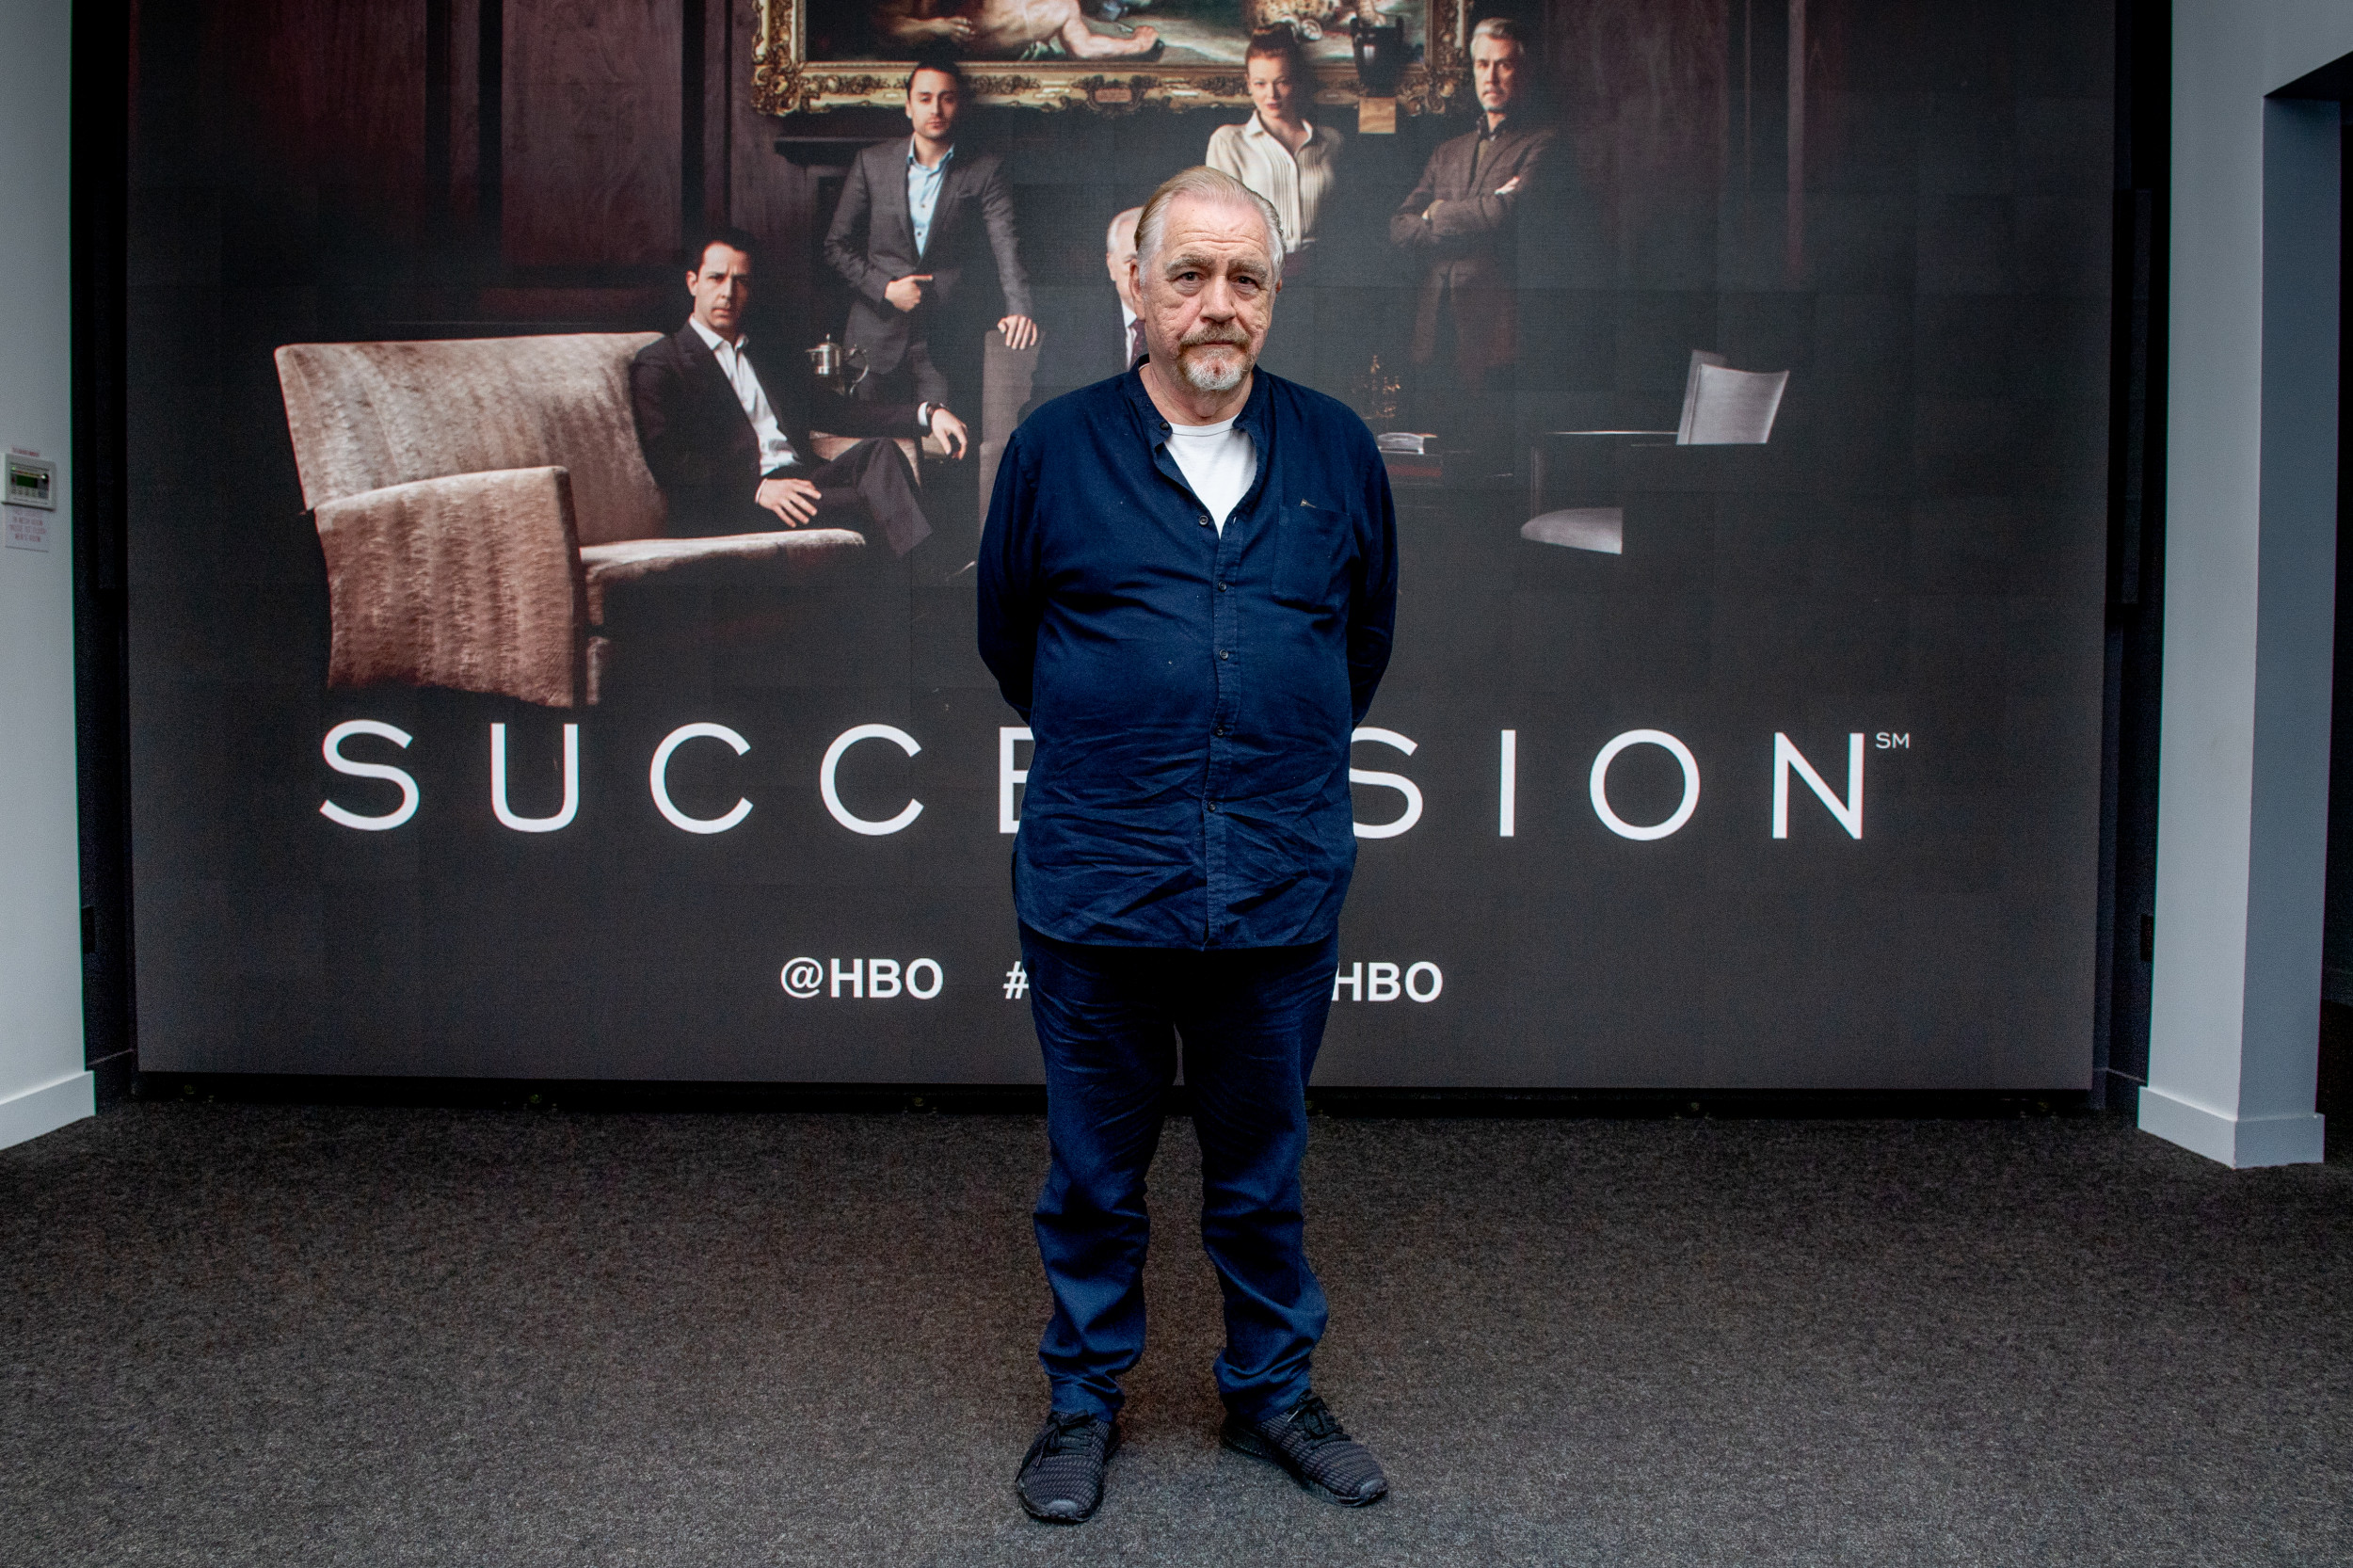 HBO 'Succession' Season 2, Episode 1 Recap, Preview of Episode 2